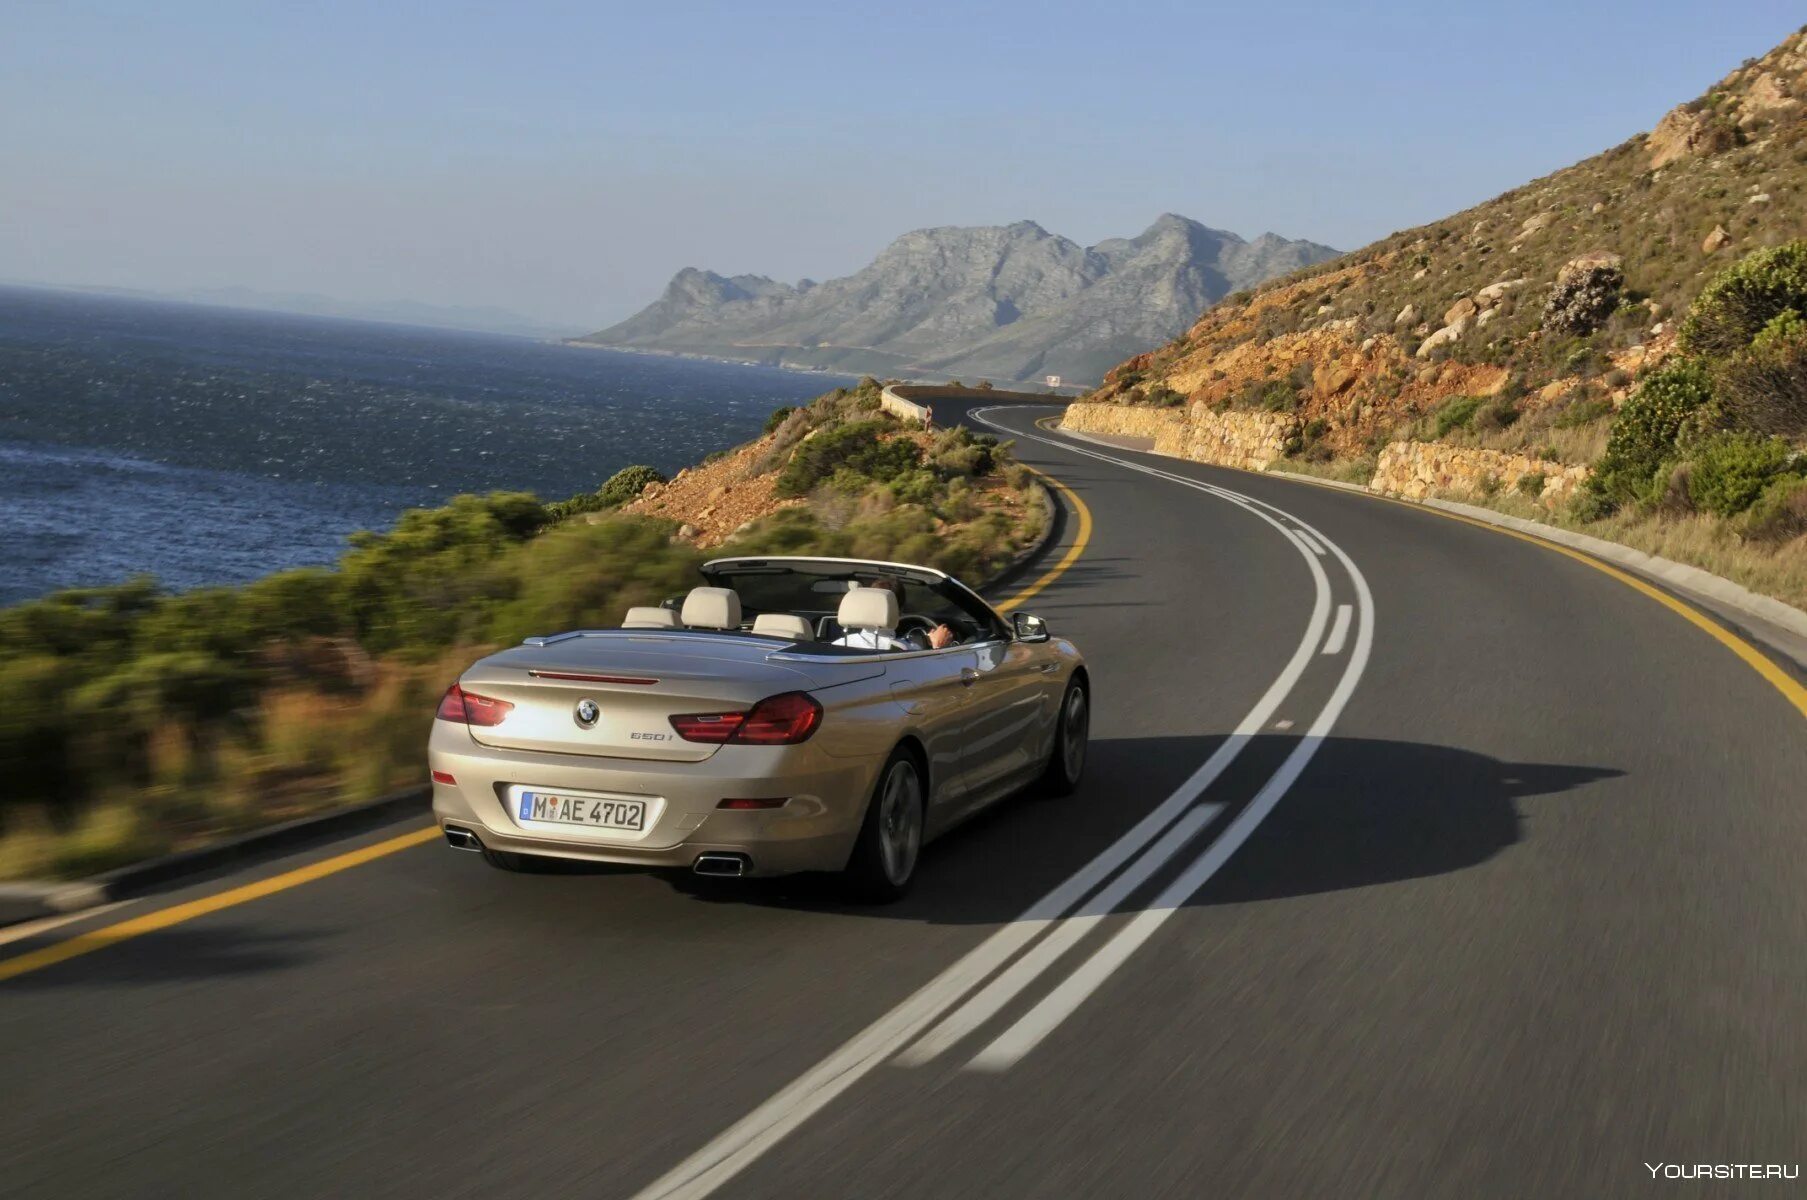 БМВ 6 gt. BMW Cabrio California. Машина на дороге. Машина едет по дороге. Автомобиль едет по дороге проезжая 24 метра